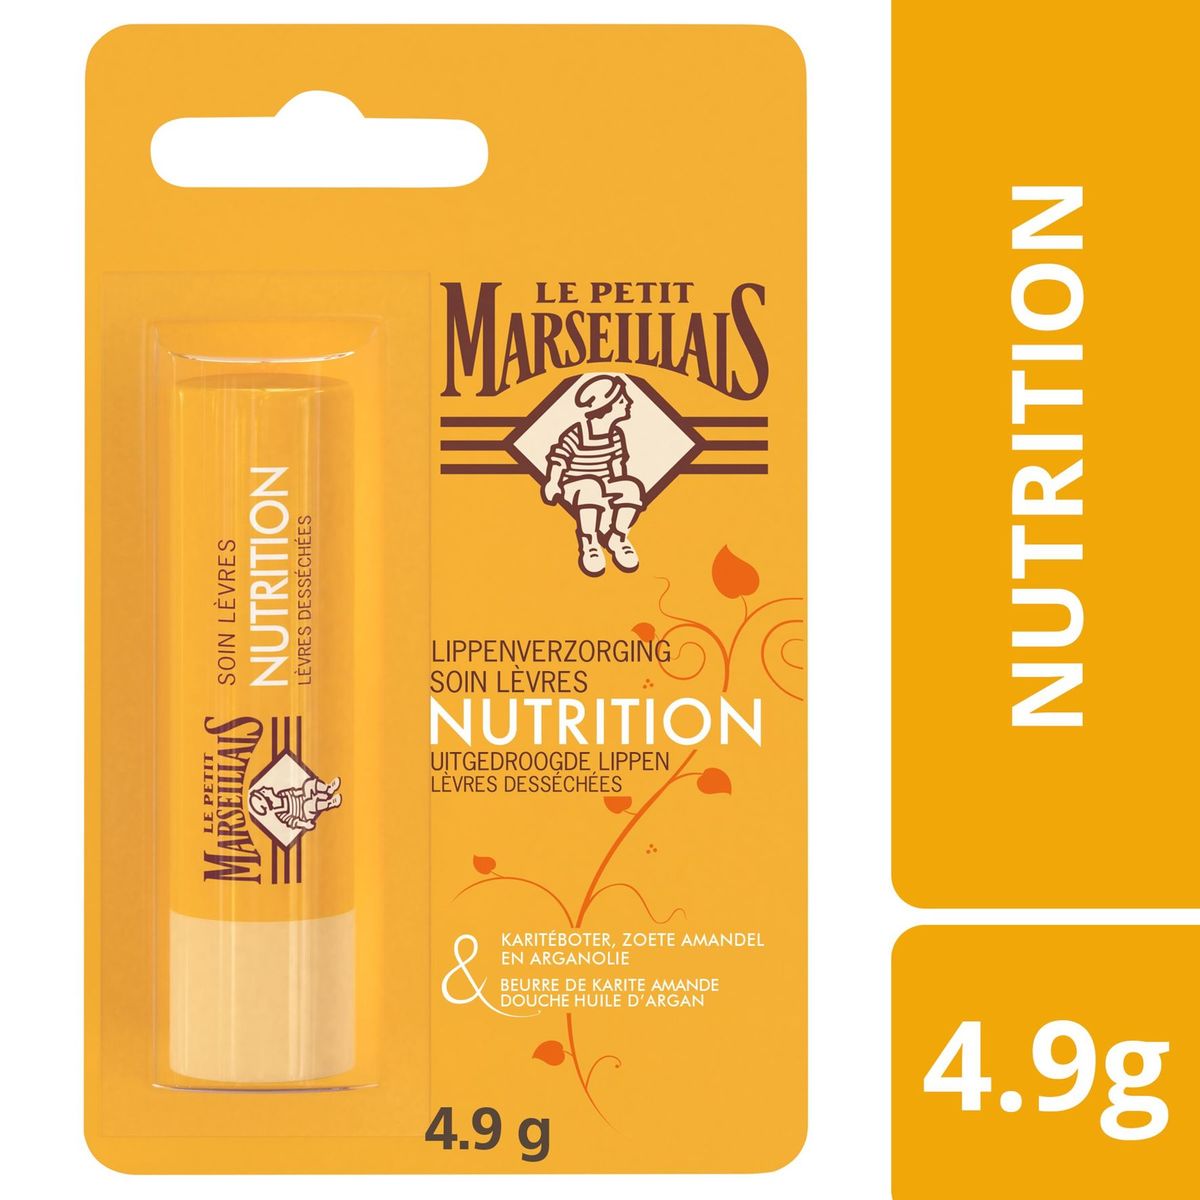 Le Petit Marseillais Soin Lèvres Nutrition 4.9 g